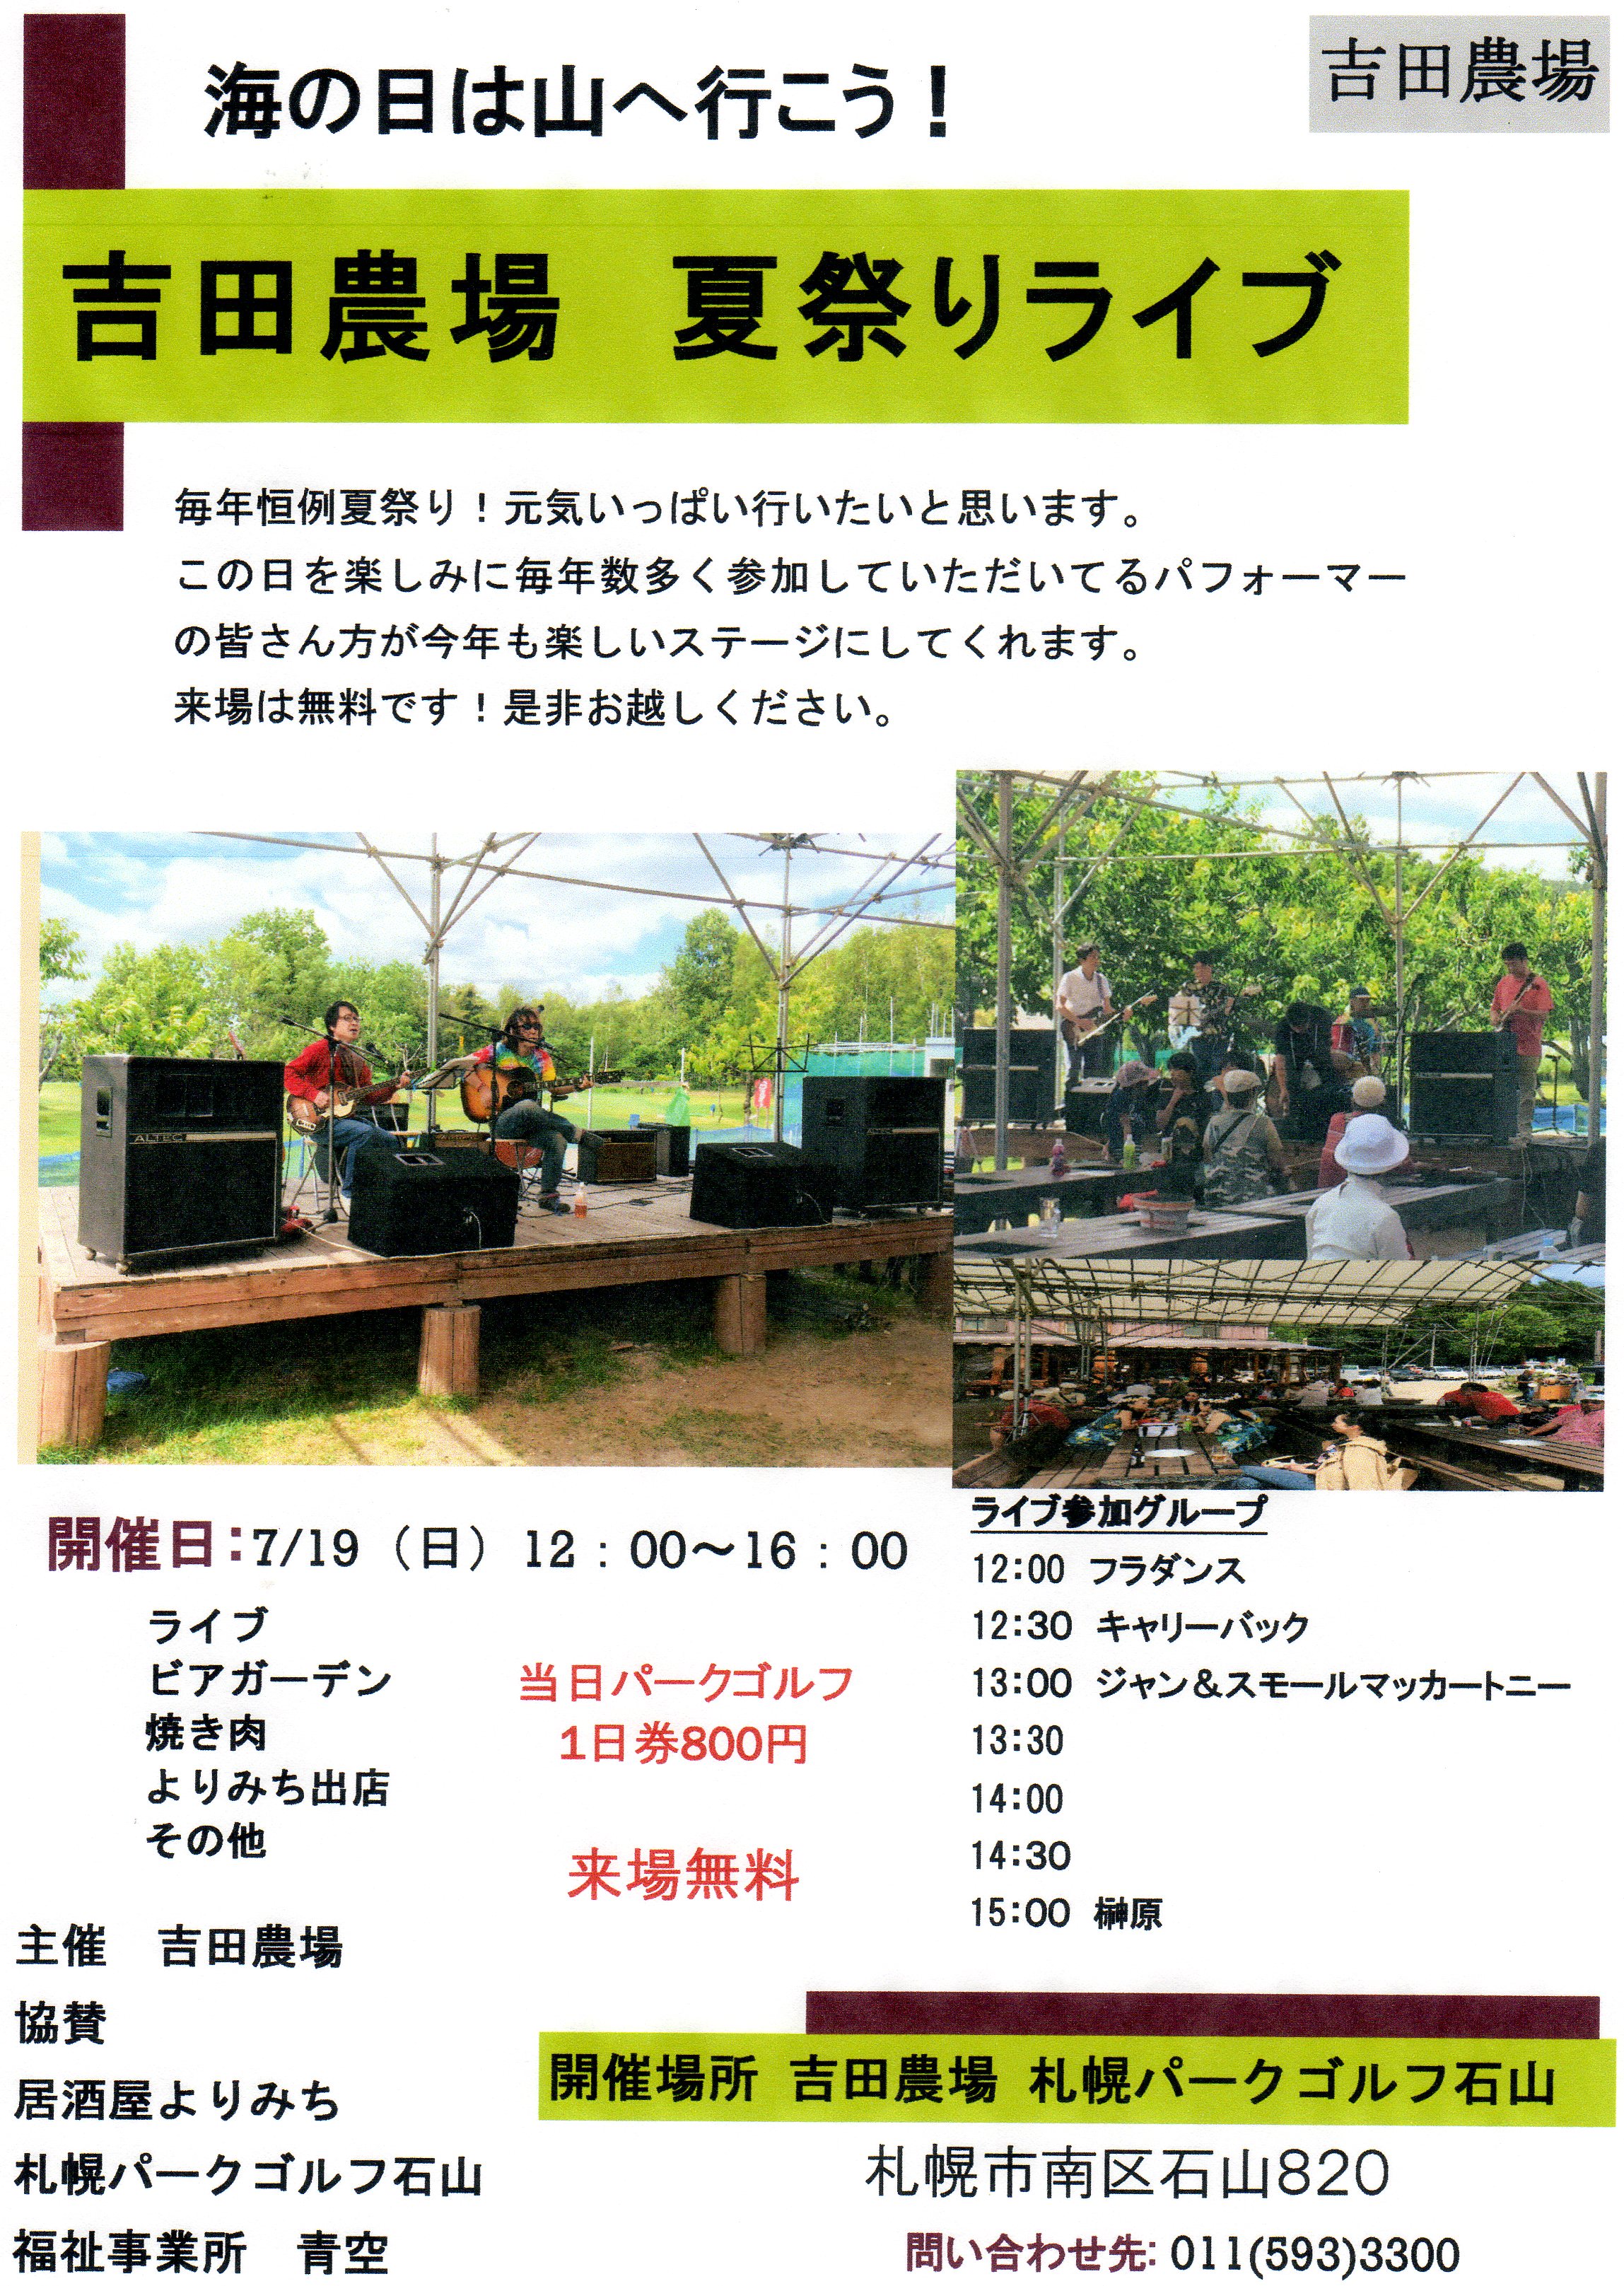 吉田農場の夏祭りライブ2015